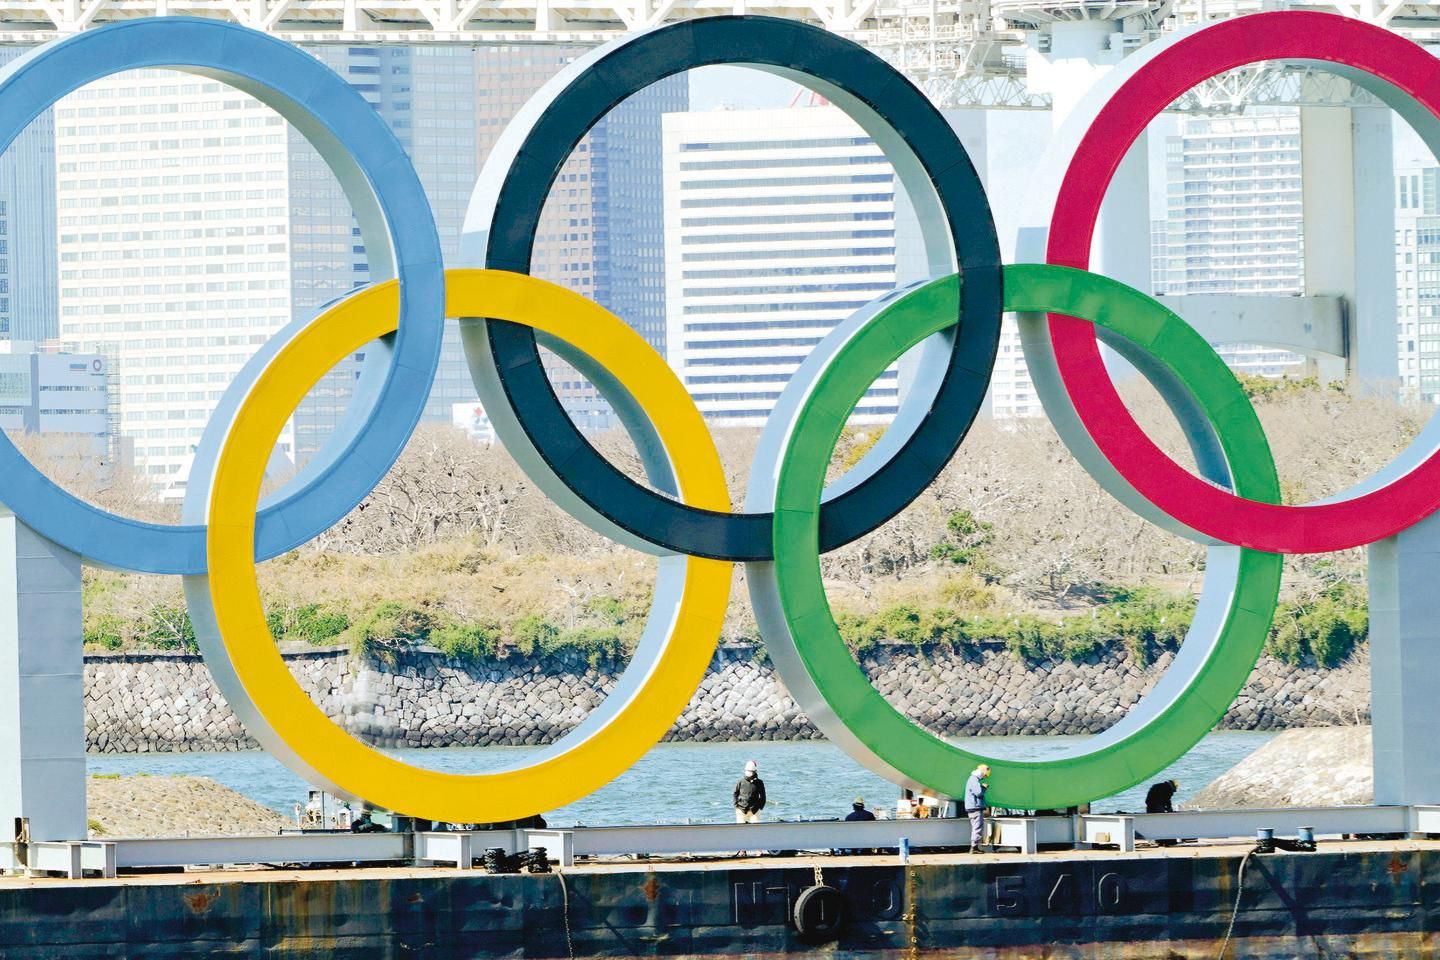 Los Angeles chega a acordo com COI para organizar Olímpicos 2028